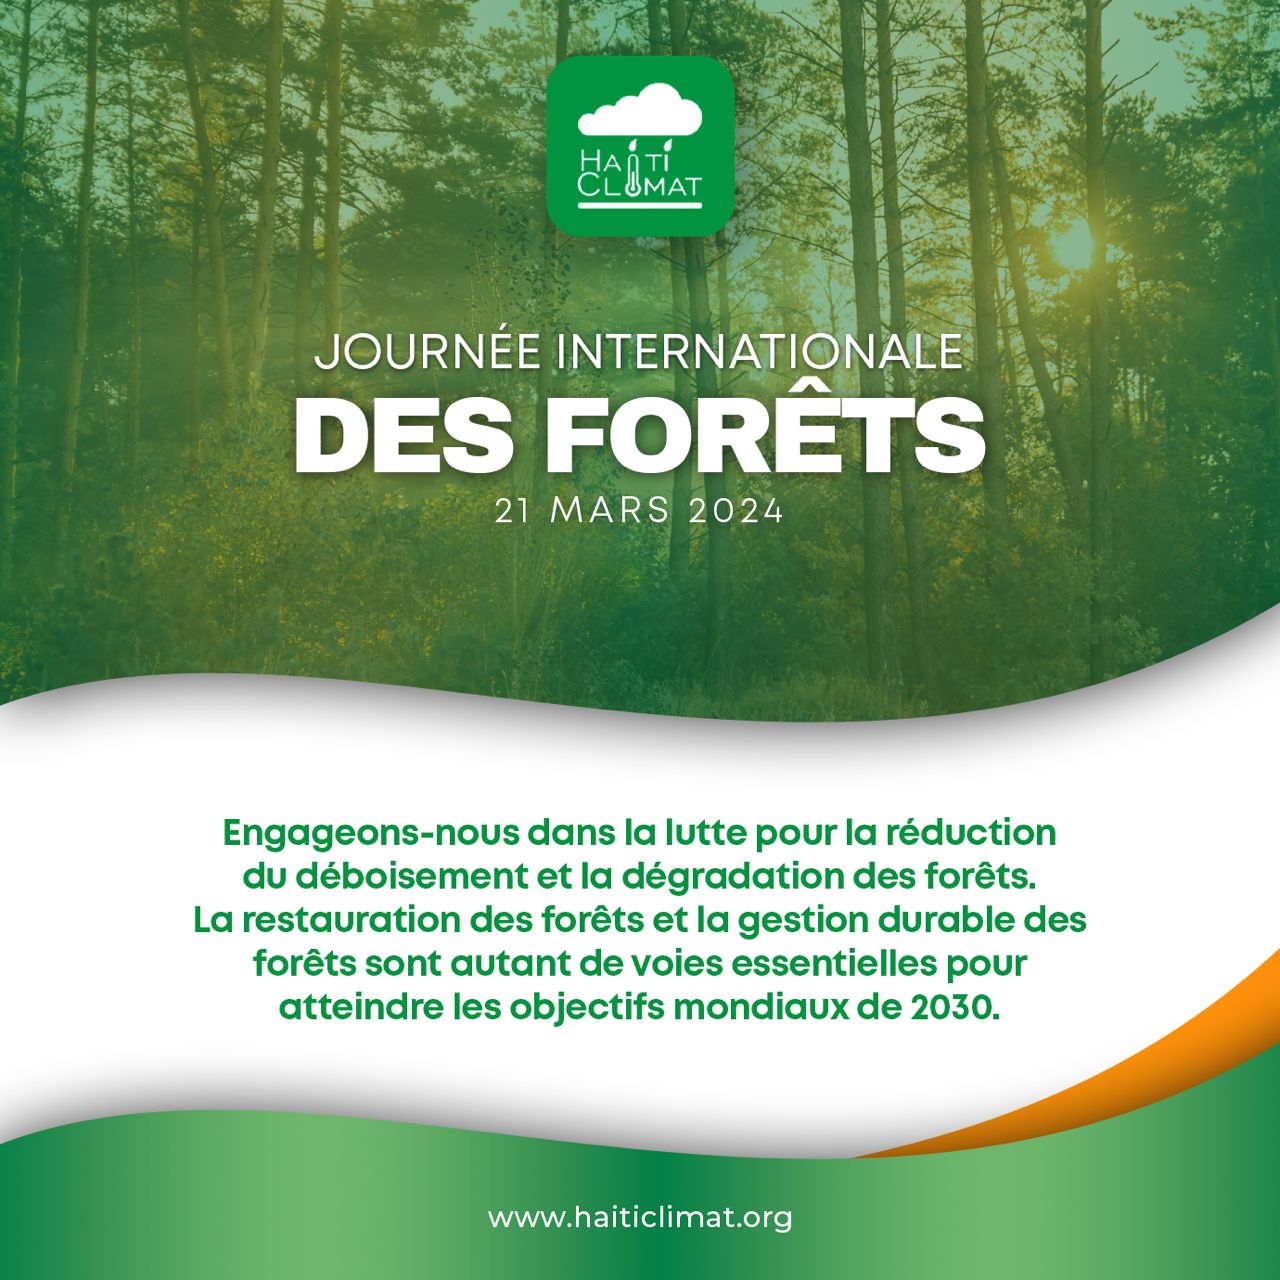 Haïti : Journée internationales des forêts, ACLEDD appelle à une gestion durable des forêts